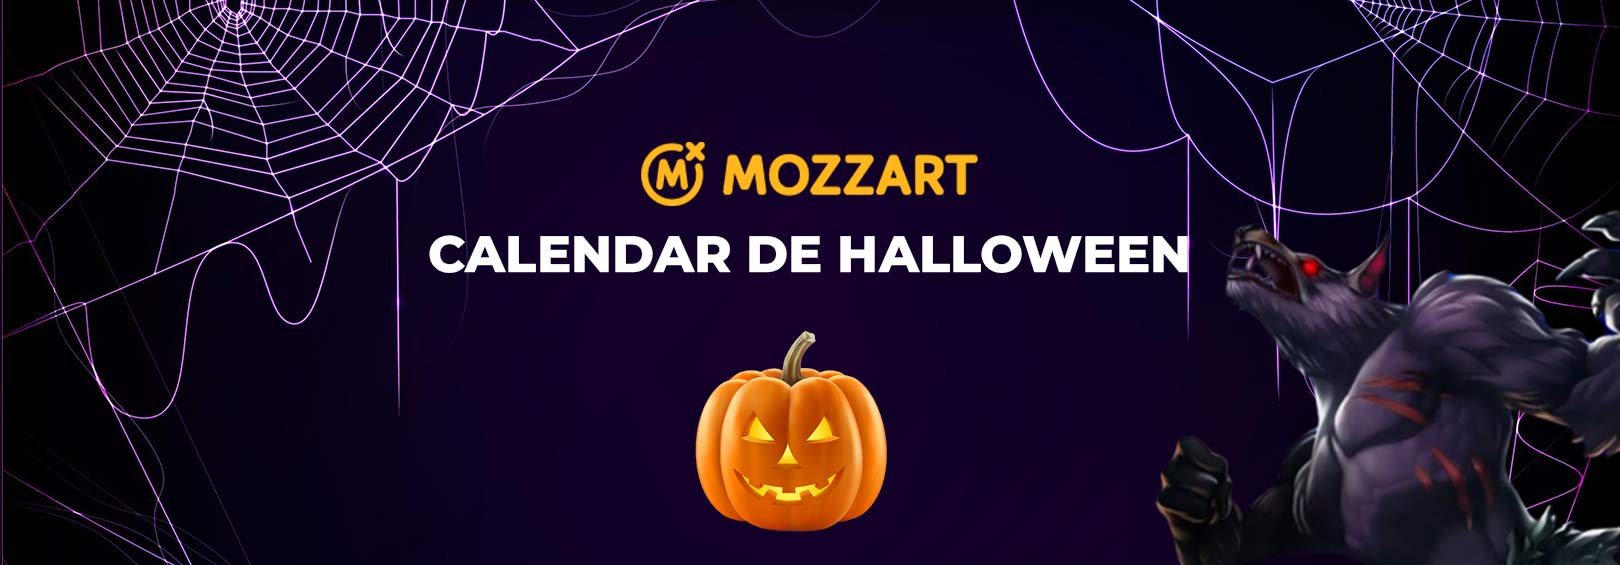 Halloween Mozzart